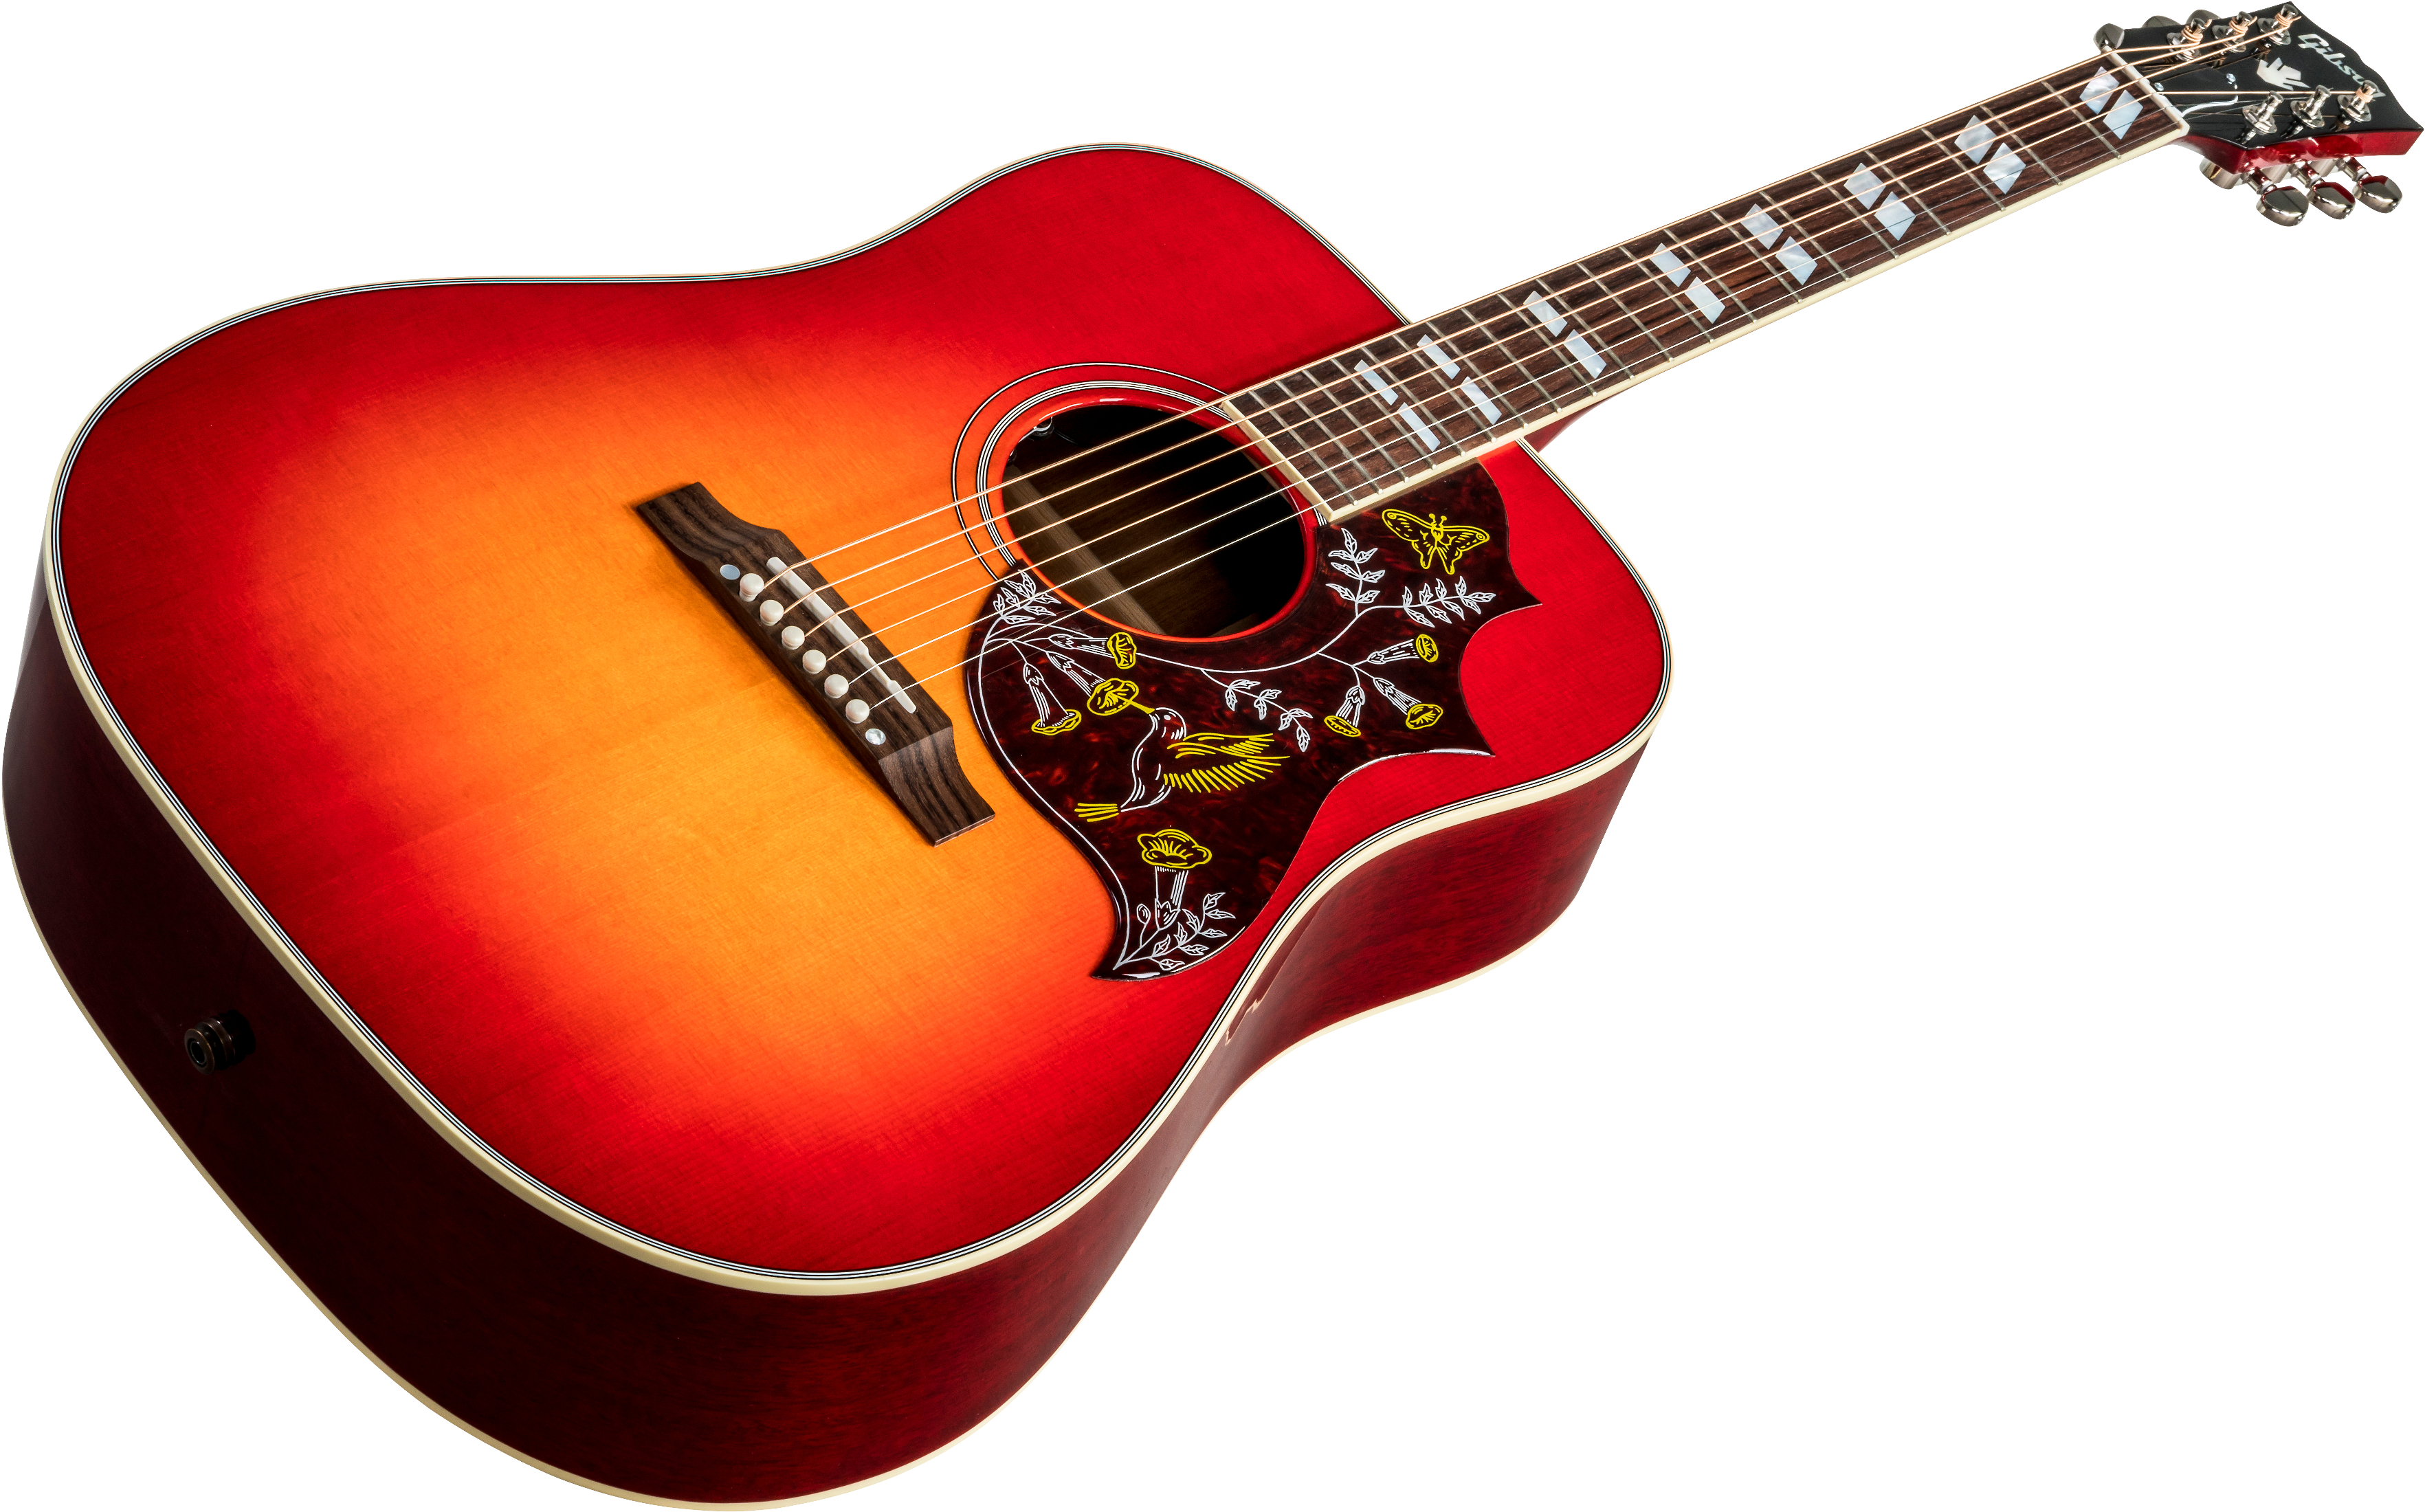 Gibson Hummingbird 2019 Dreadnought Epicea Acajou Rw - Vintage Cherry Sunburst - Acoustic guitar & electro - Variation 4